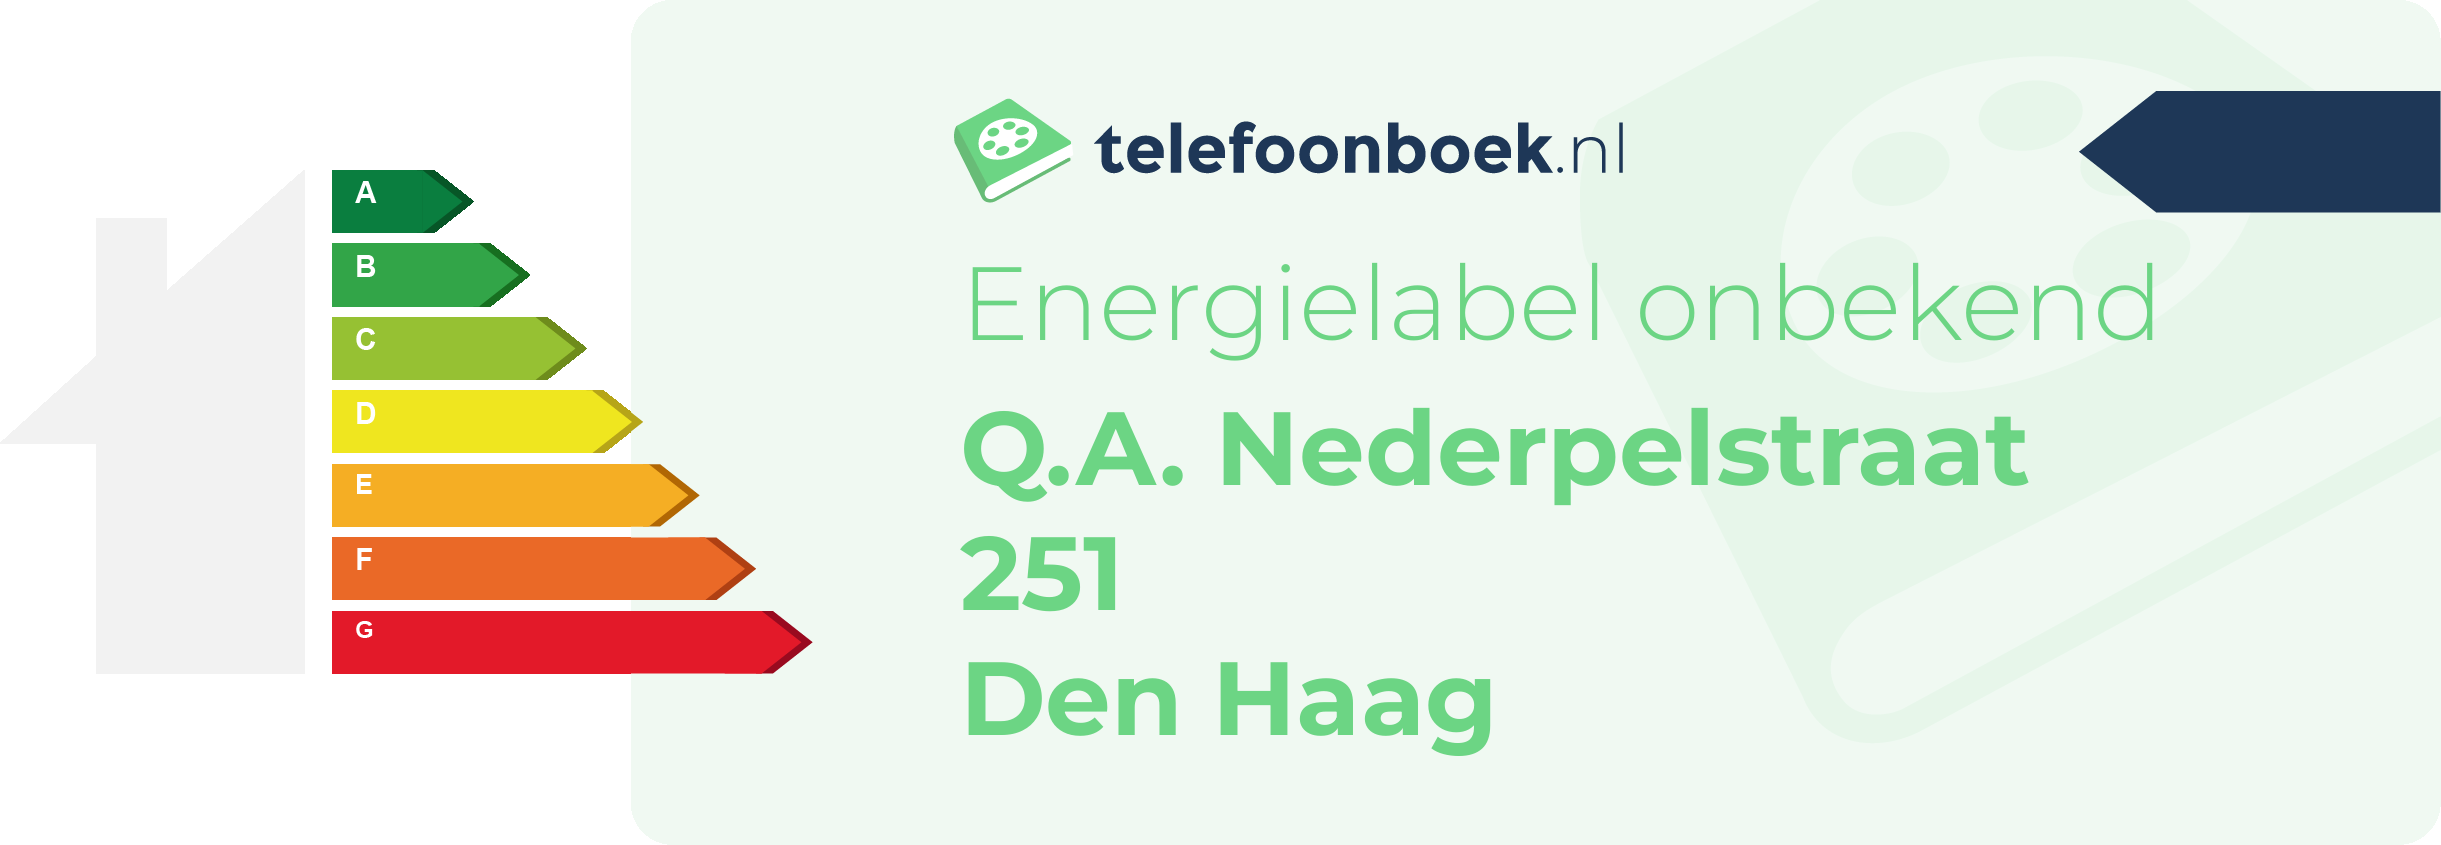 Energielabel Q.A. Nederpelstraat 251 Den Haag